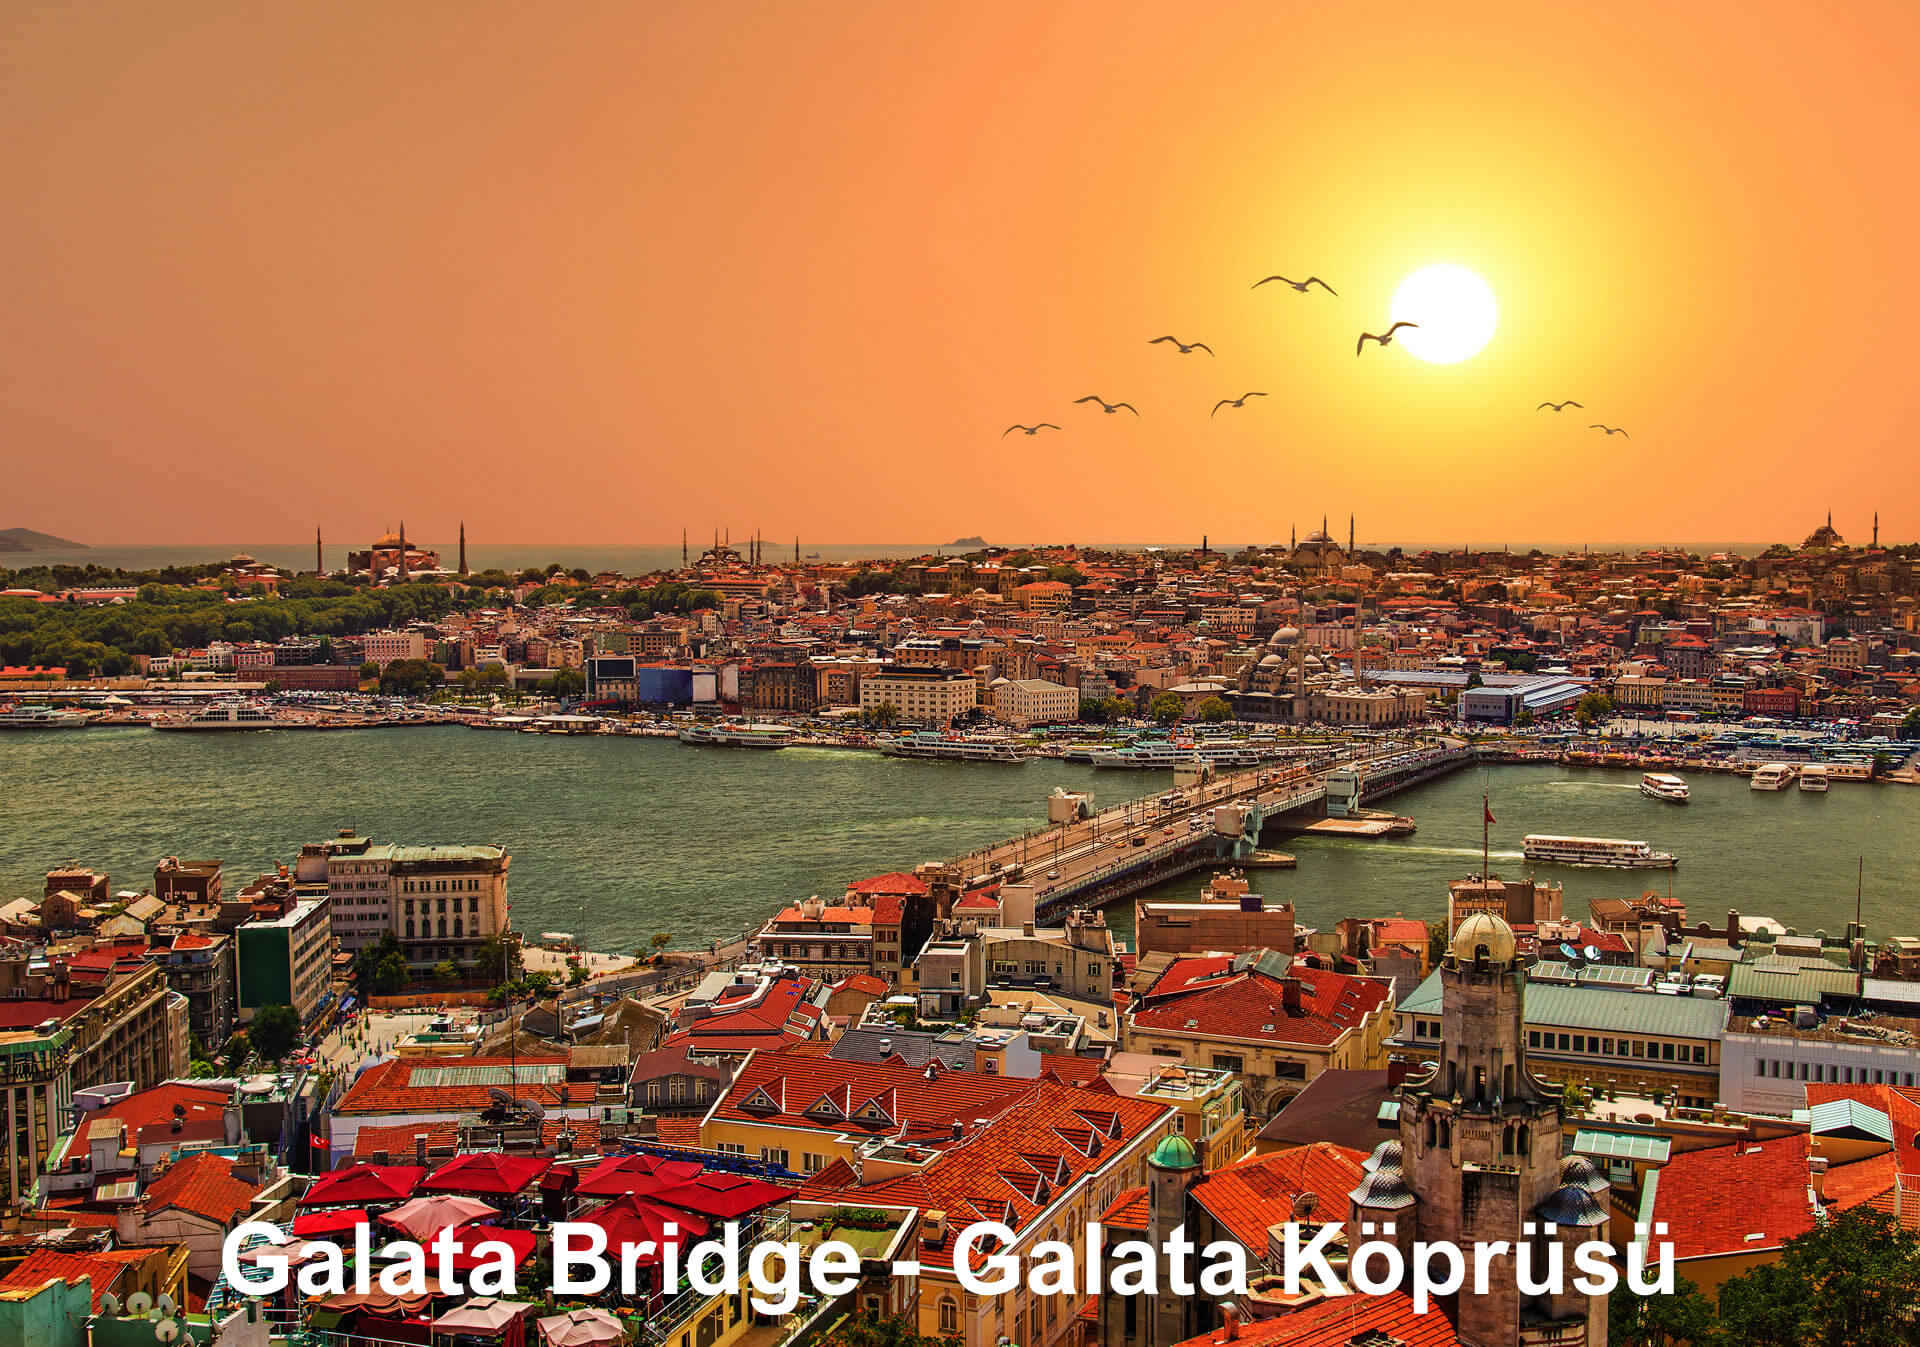 Galata Bridge - Galata Köprüsü